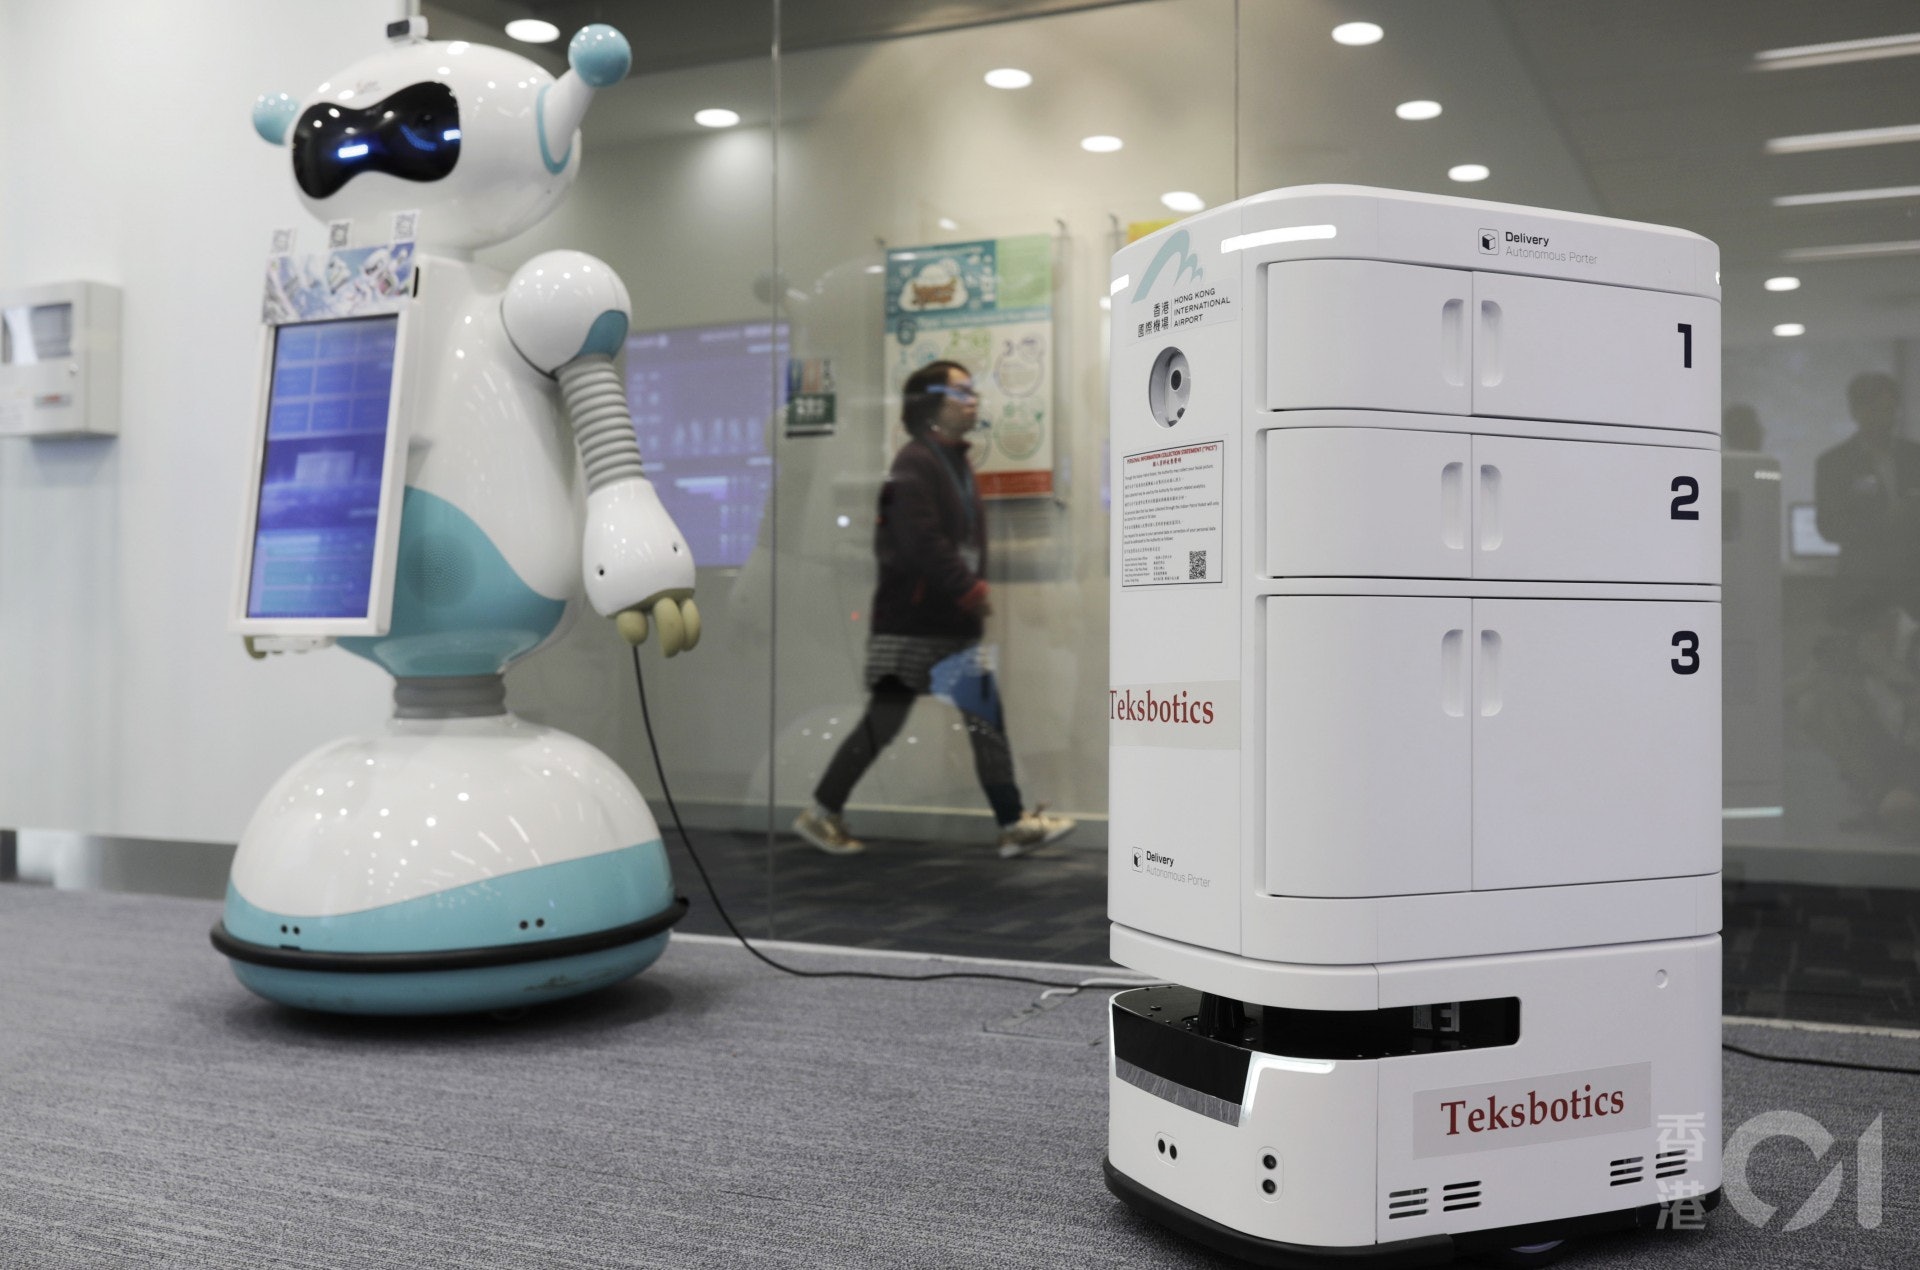 傳送機器人的相關技術將應用於香港海關，料今年9月在機場禁區陸續投入10部機器人使用，可在預設路線上傳送物件，包括免稅物品、送餐服務等。（余俊亮攝）